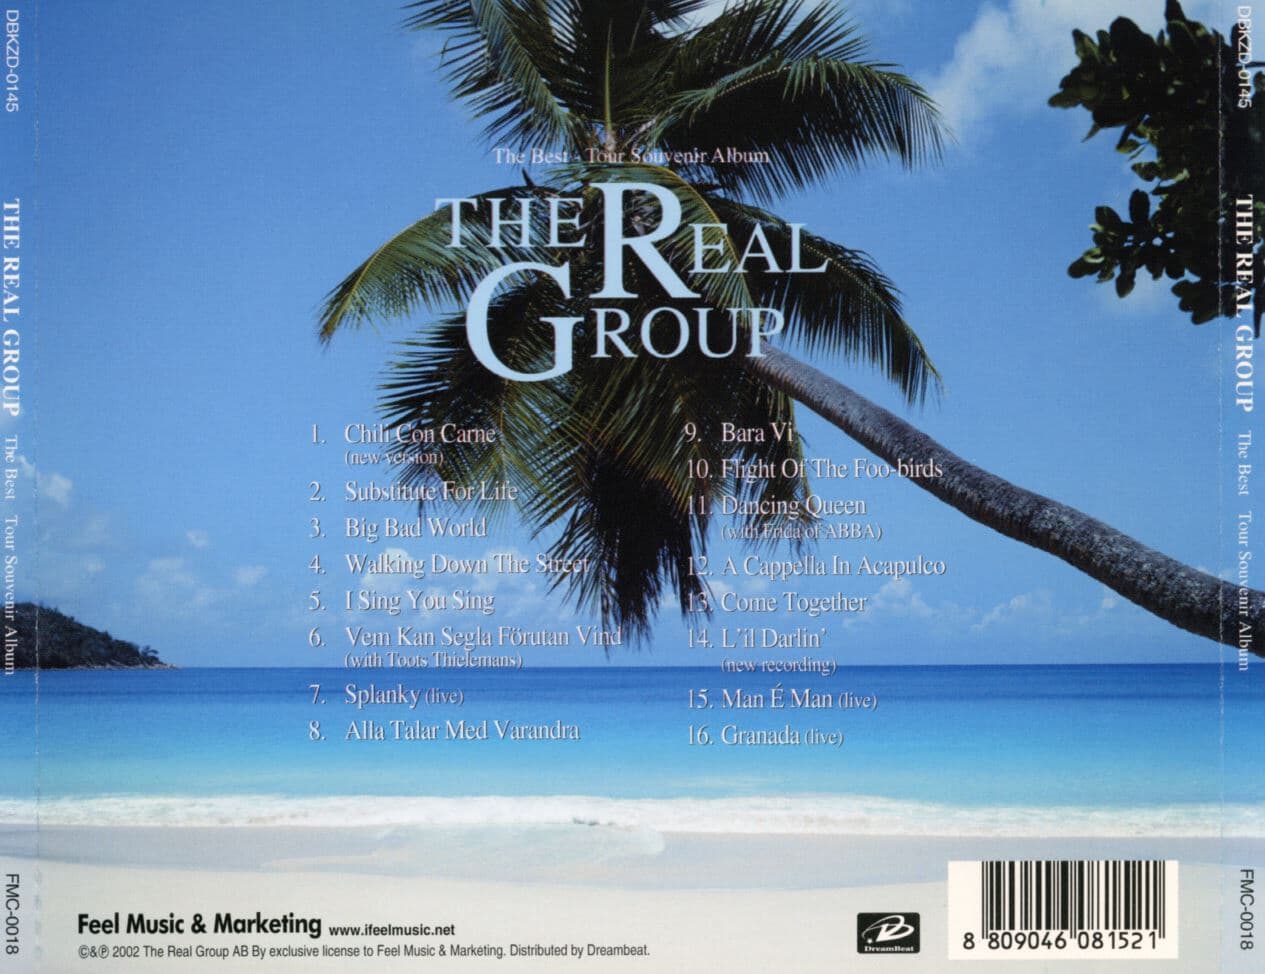 리얼 그룹 - The Real Group - The Best-Tour Souvenir Album 